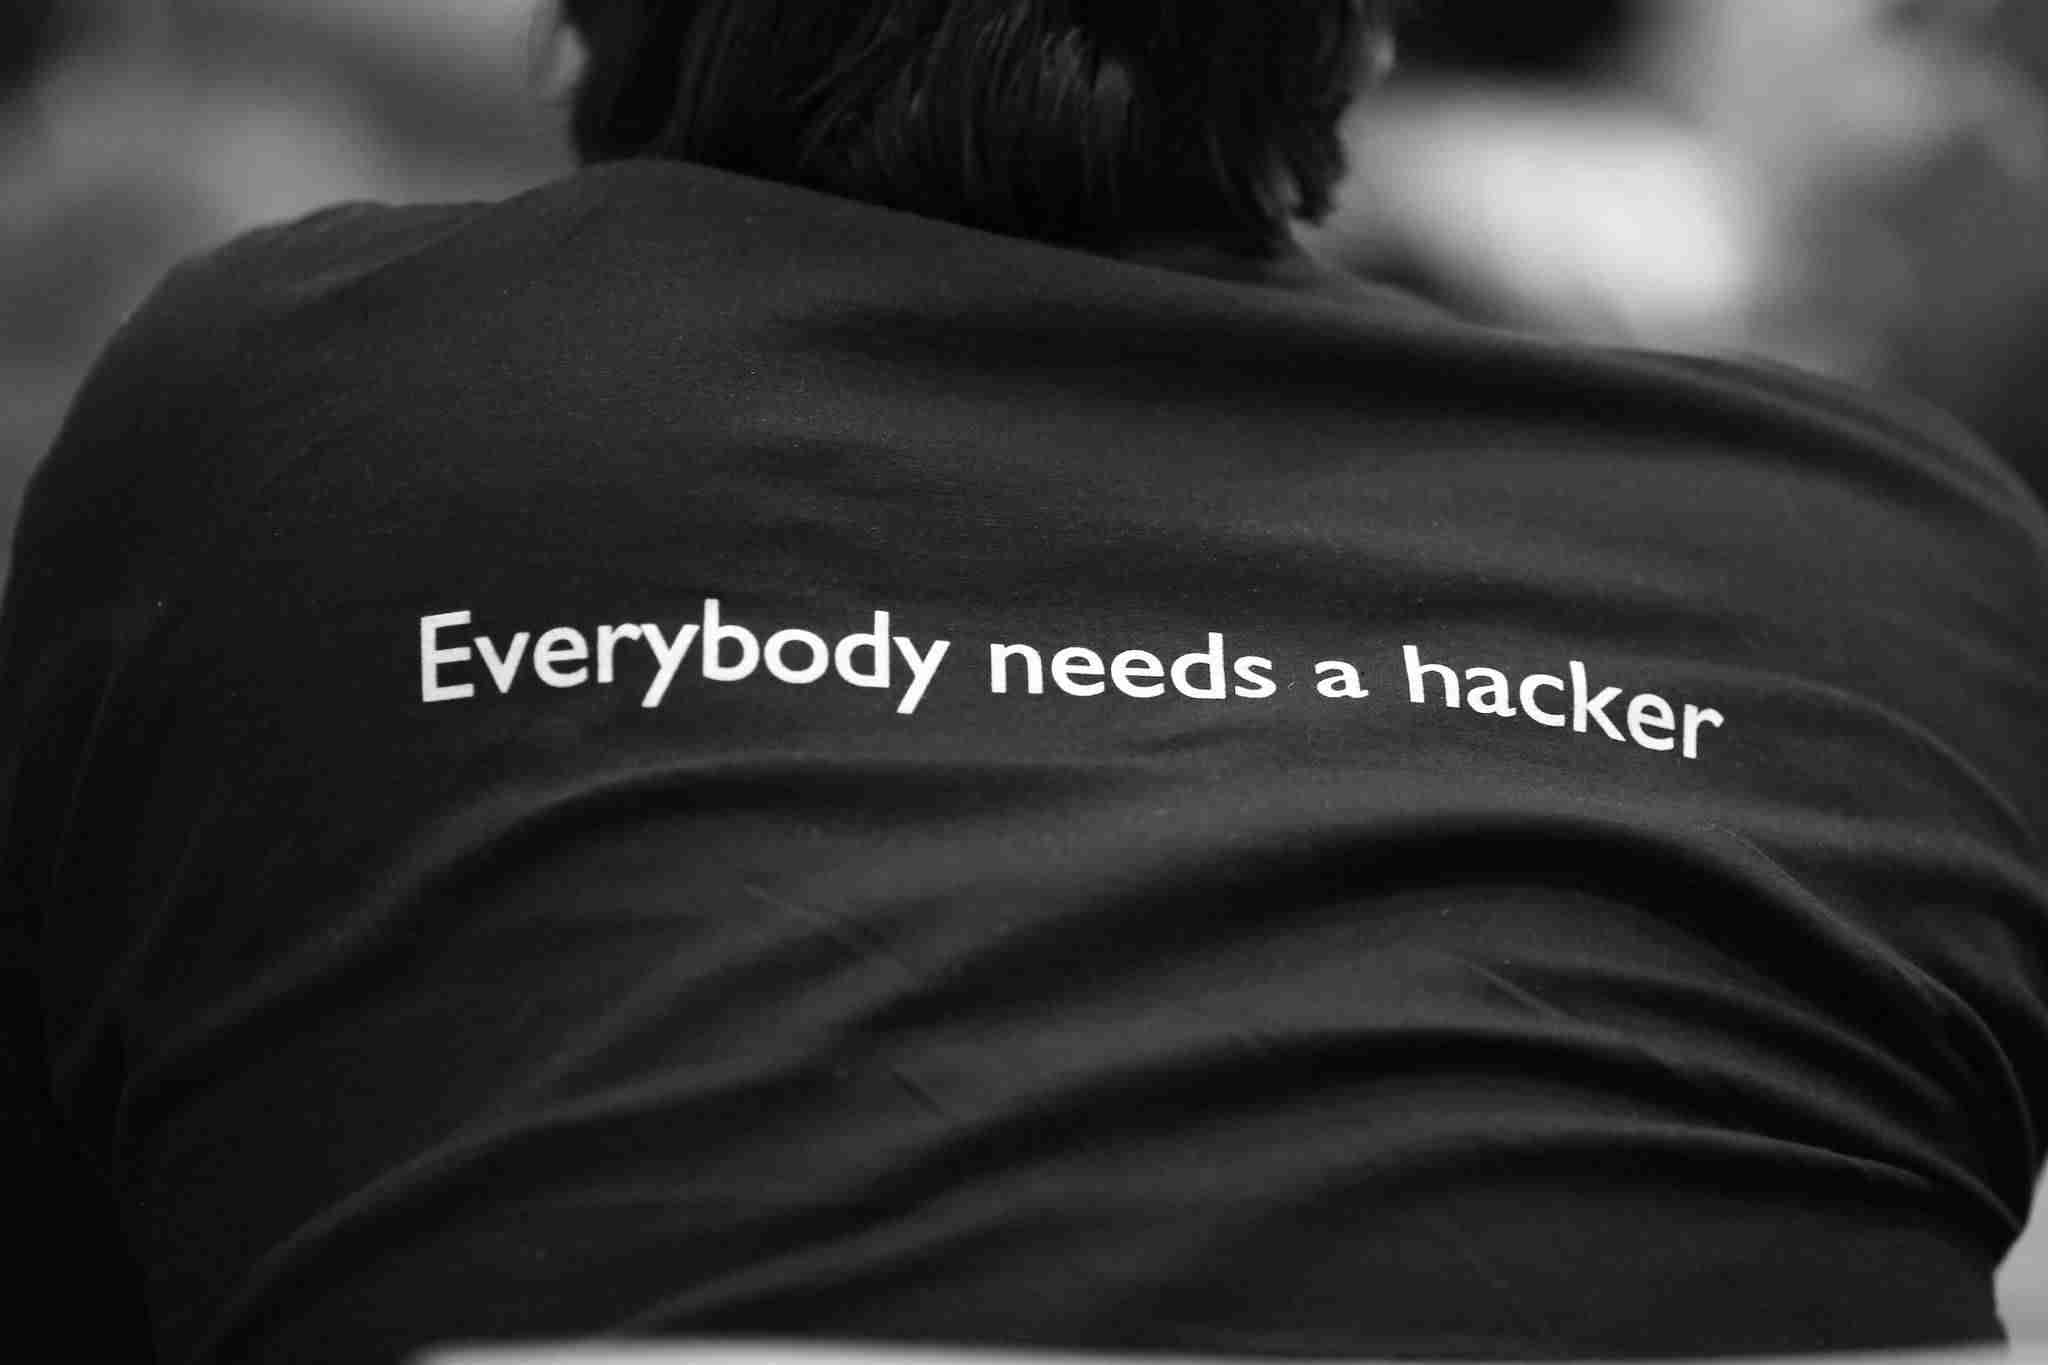 Limitar el número de intentos en el login de WordPress - Everybody needs a hacker